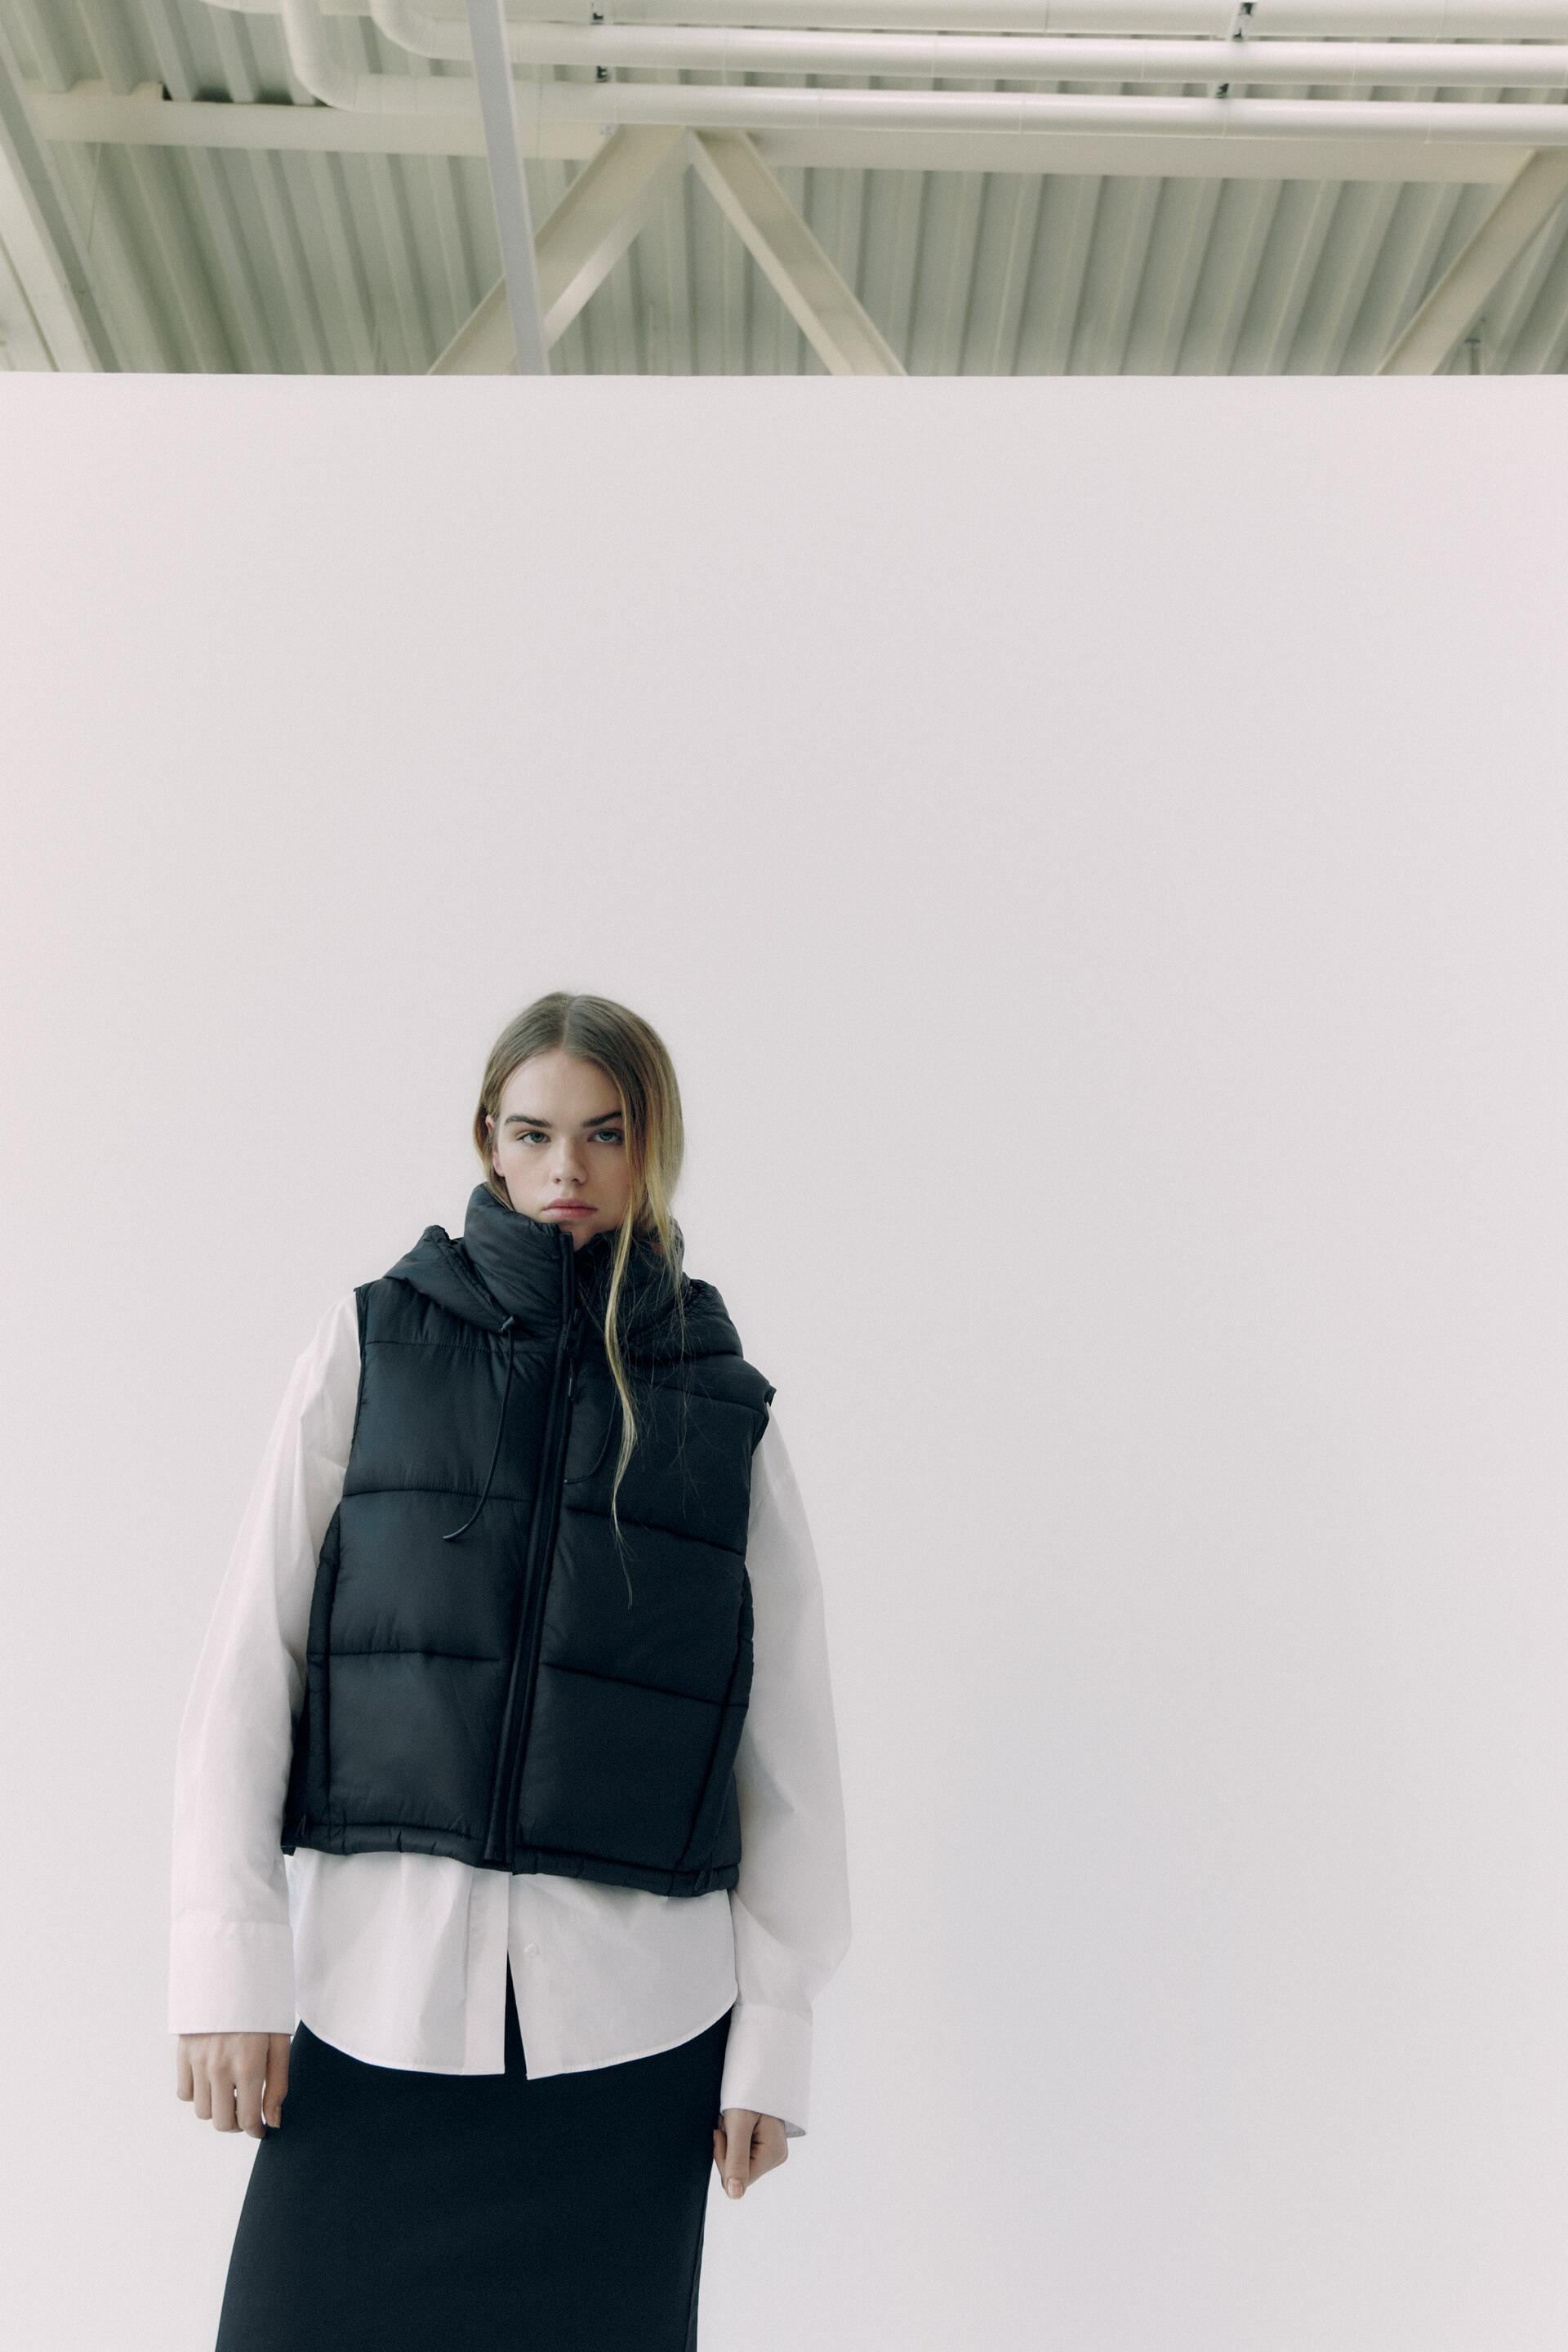 El diseño viral de chaleco acolchado de Zara